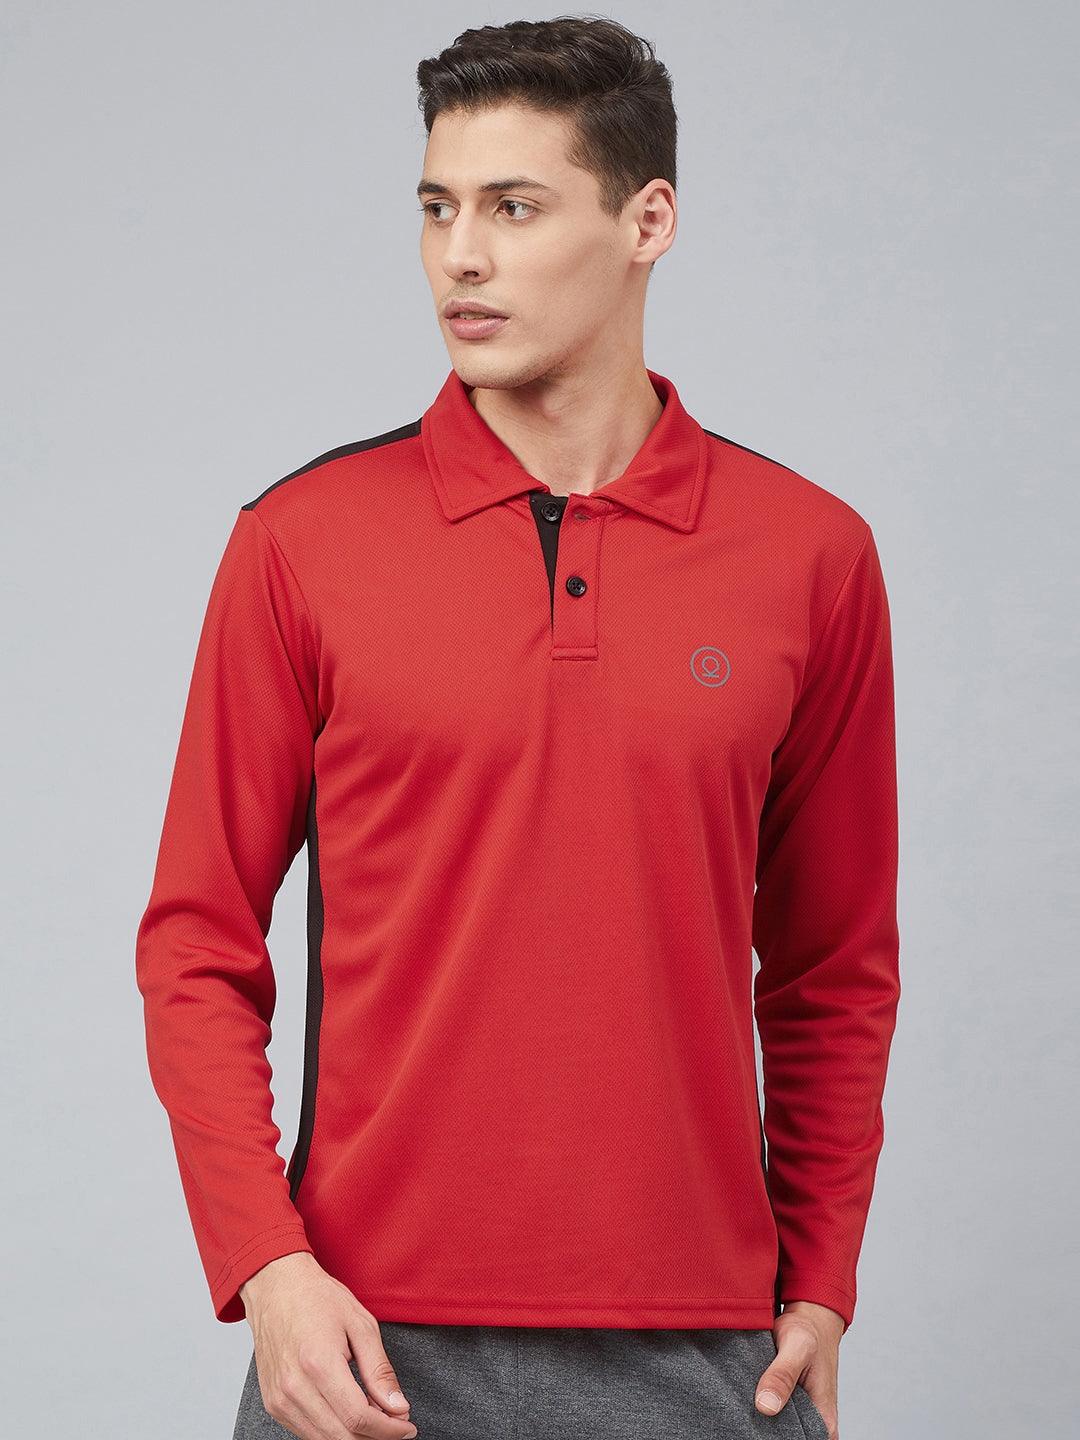 Men's Regular Dry Fit Full Sleeves Polo T-Shirt | CHKOKKO - Chkokko